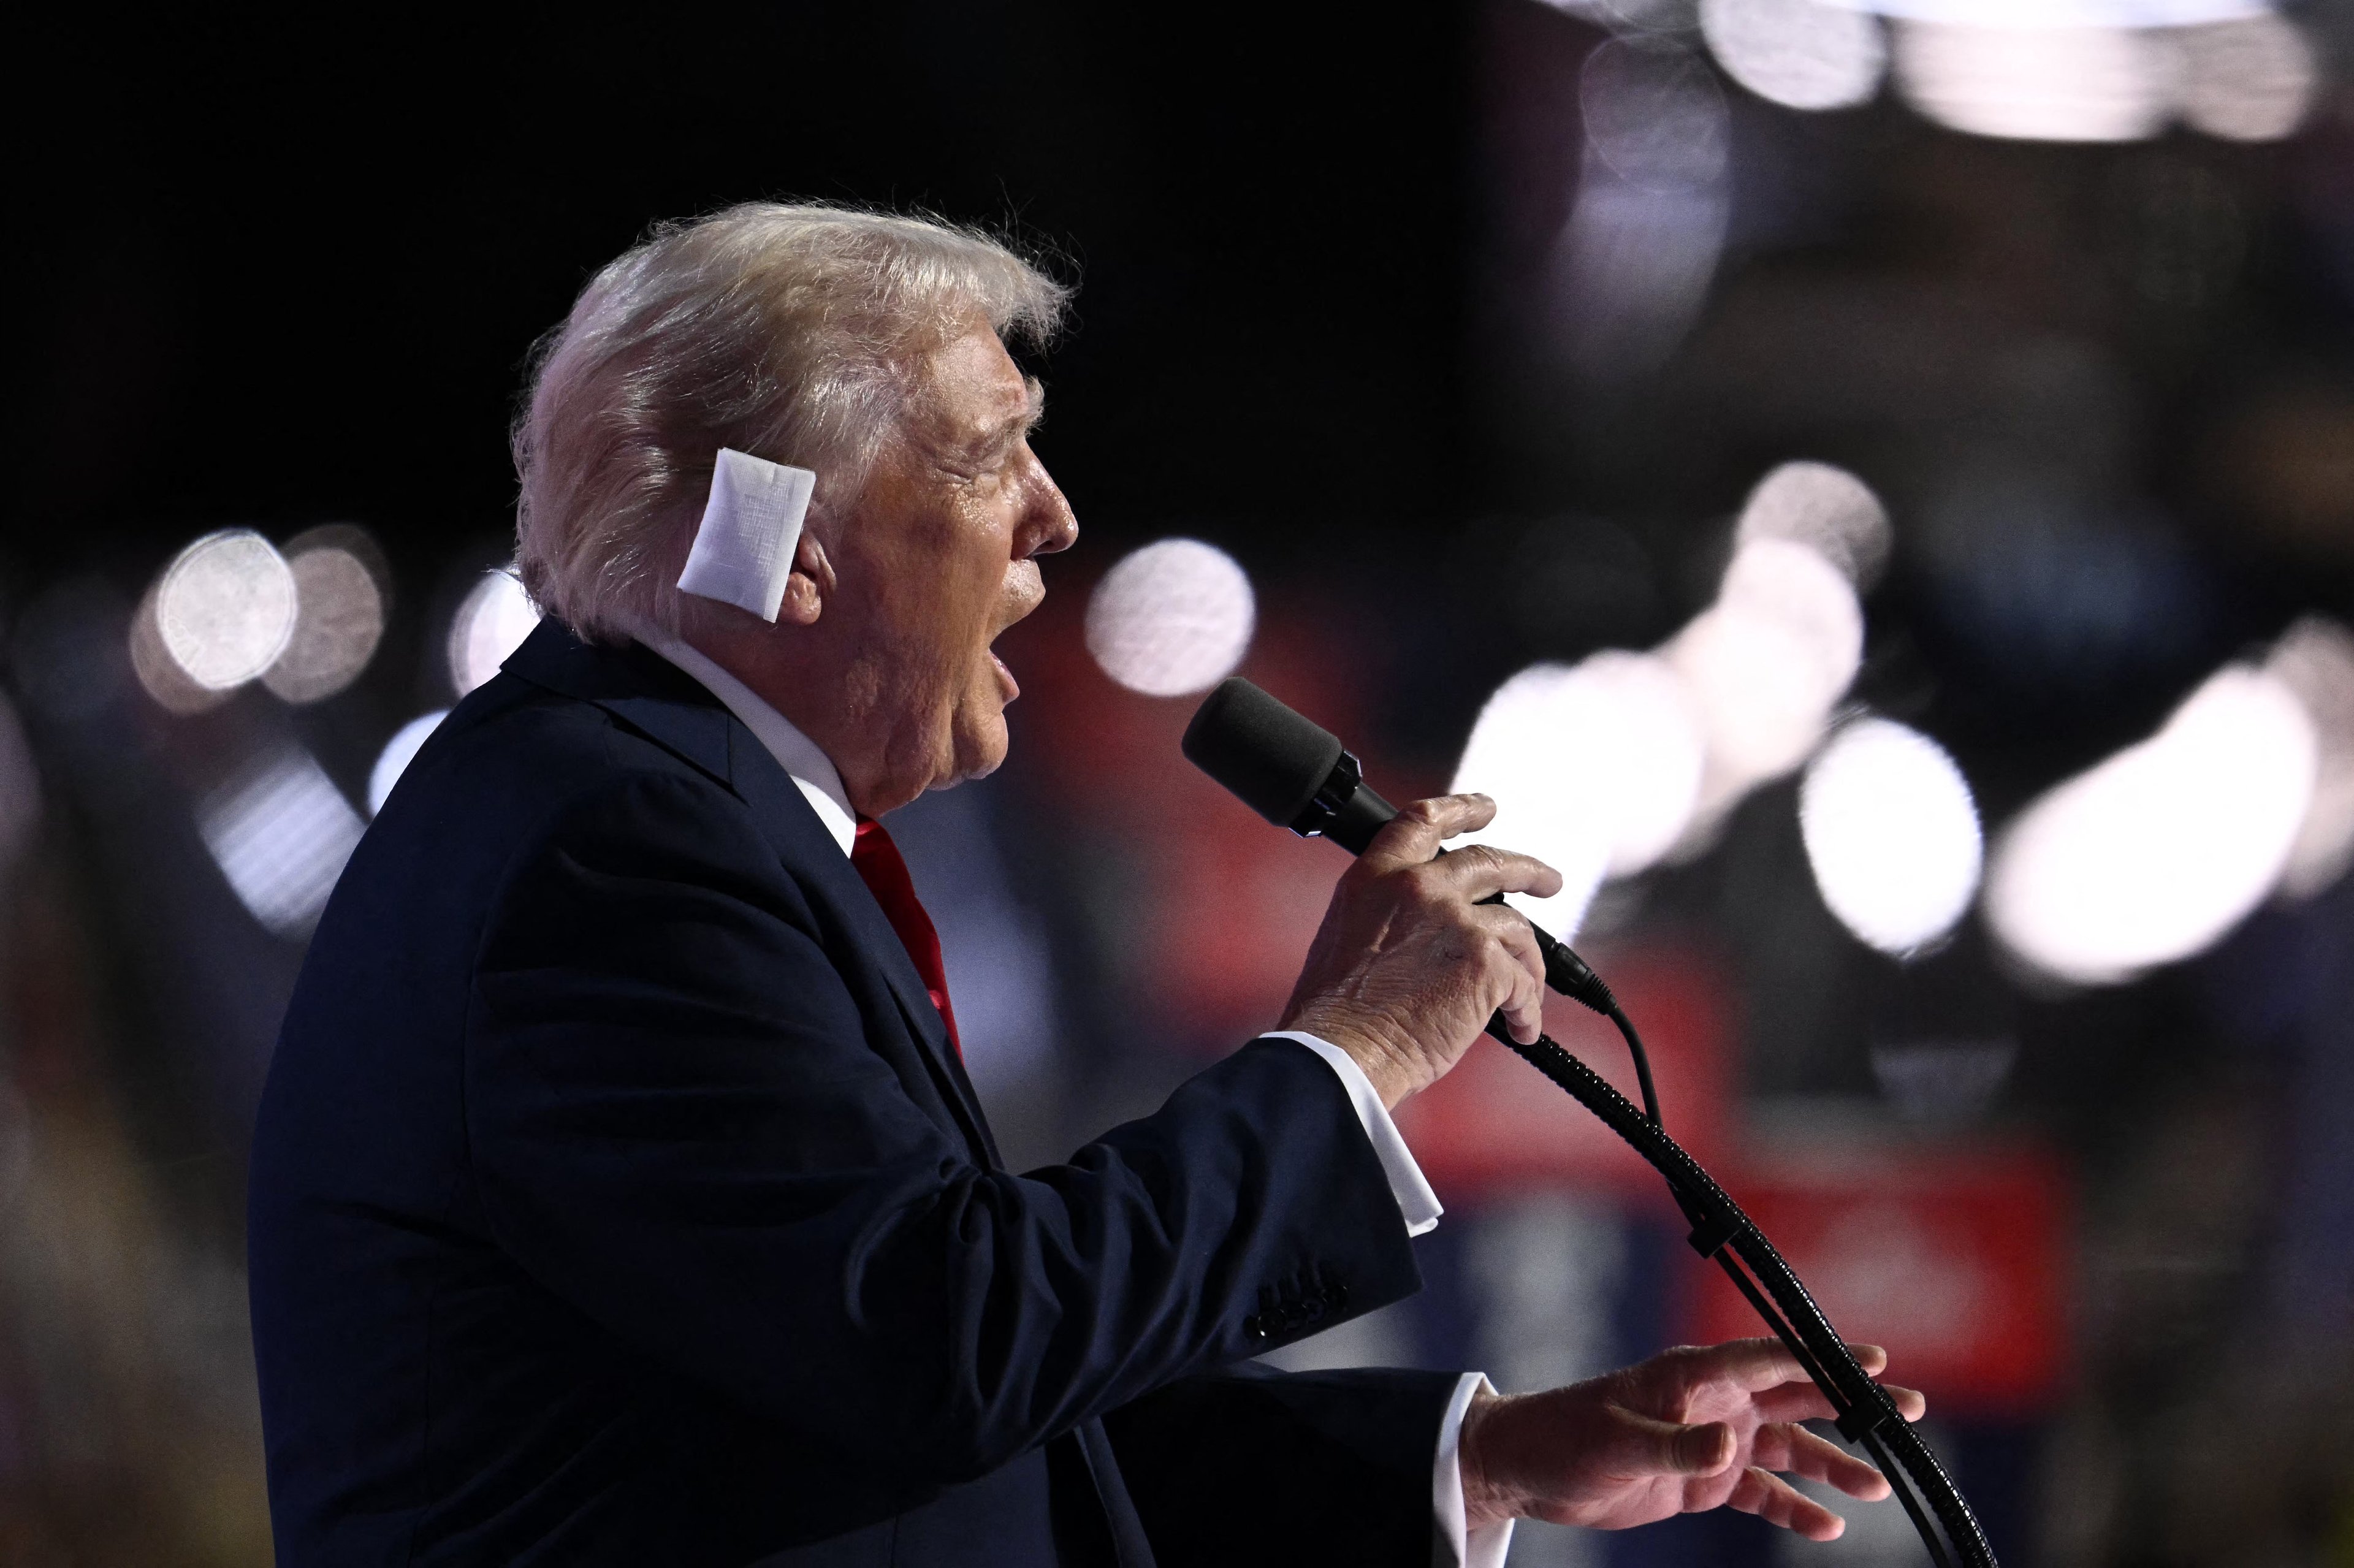 Galeria de fotos de Convenção Republicana: veja fotos do 1º discurso de Trump após atentado na Pensilvânia